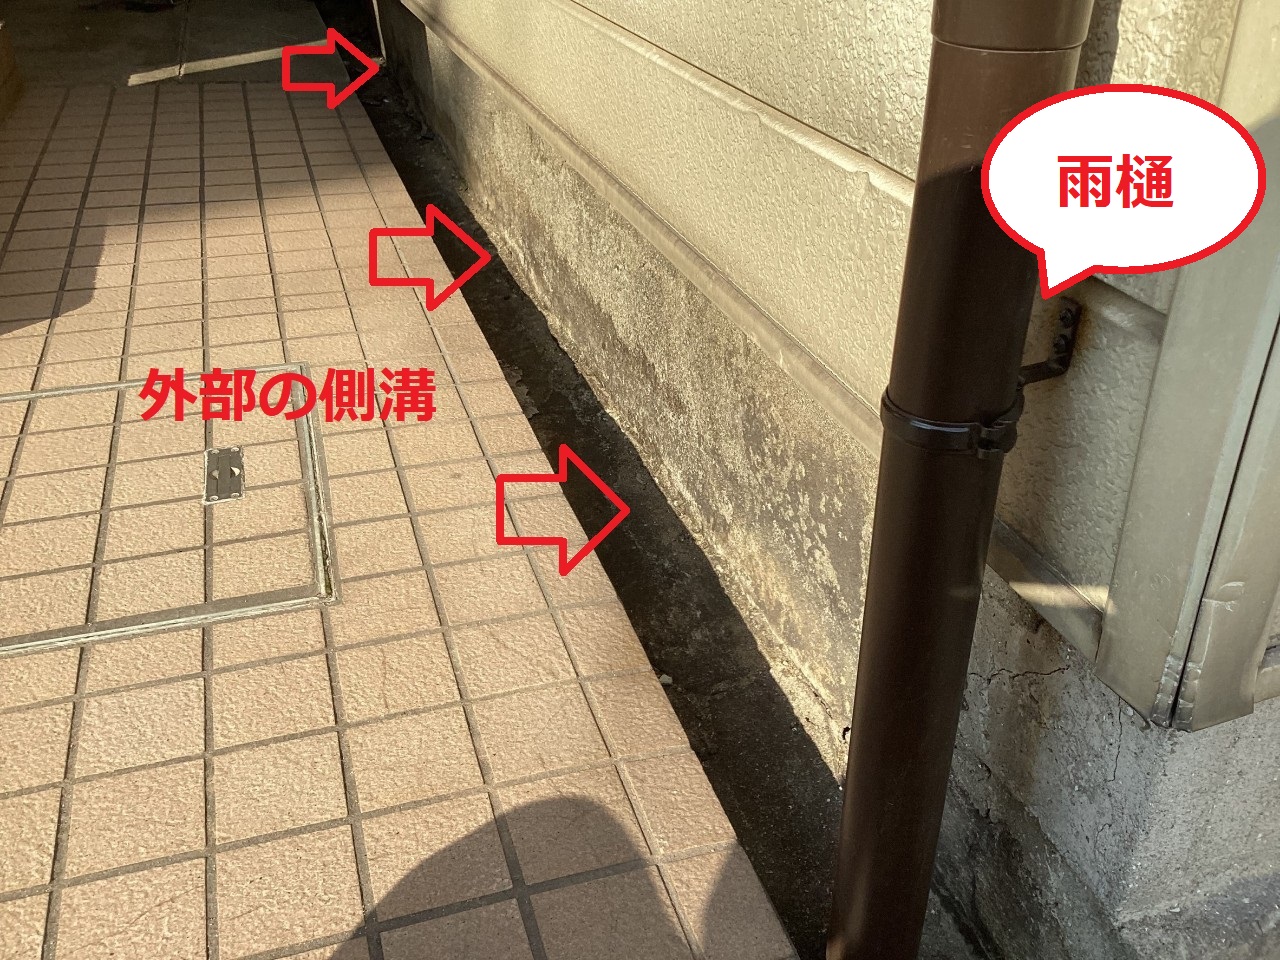 神戸市兵庫区での外部の側溝が水漏れしている様子